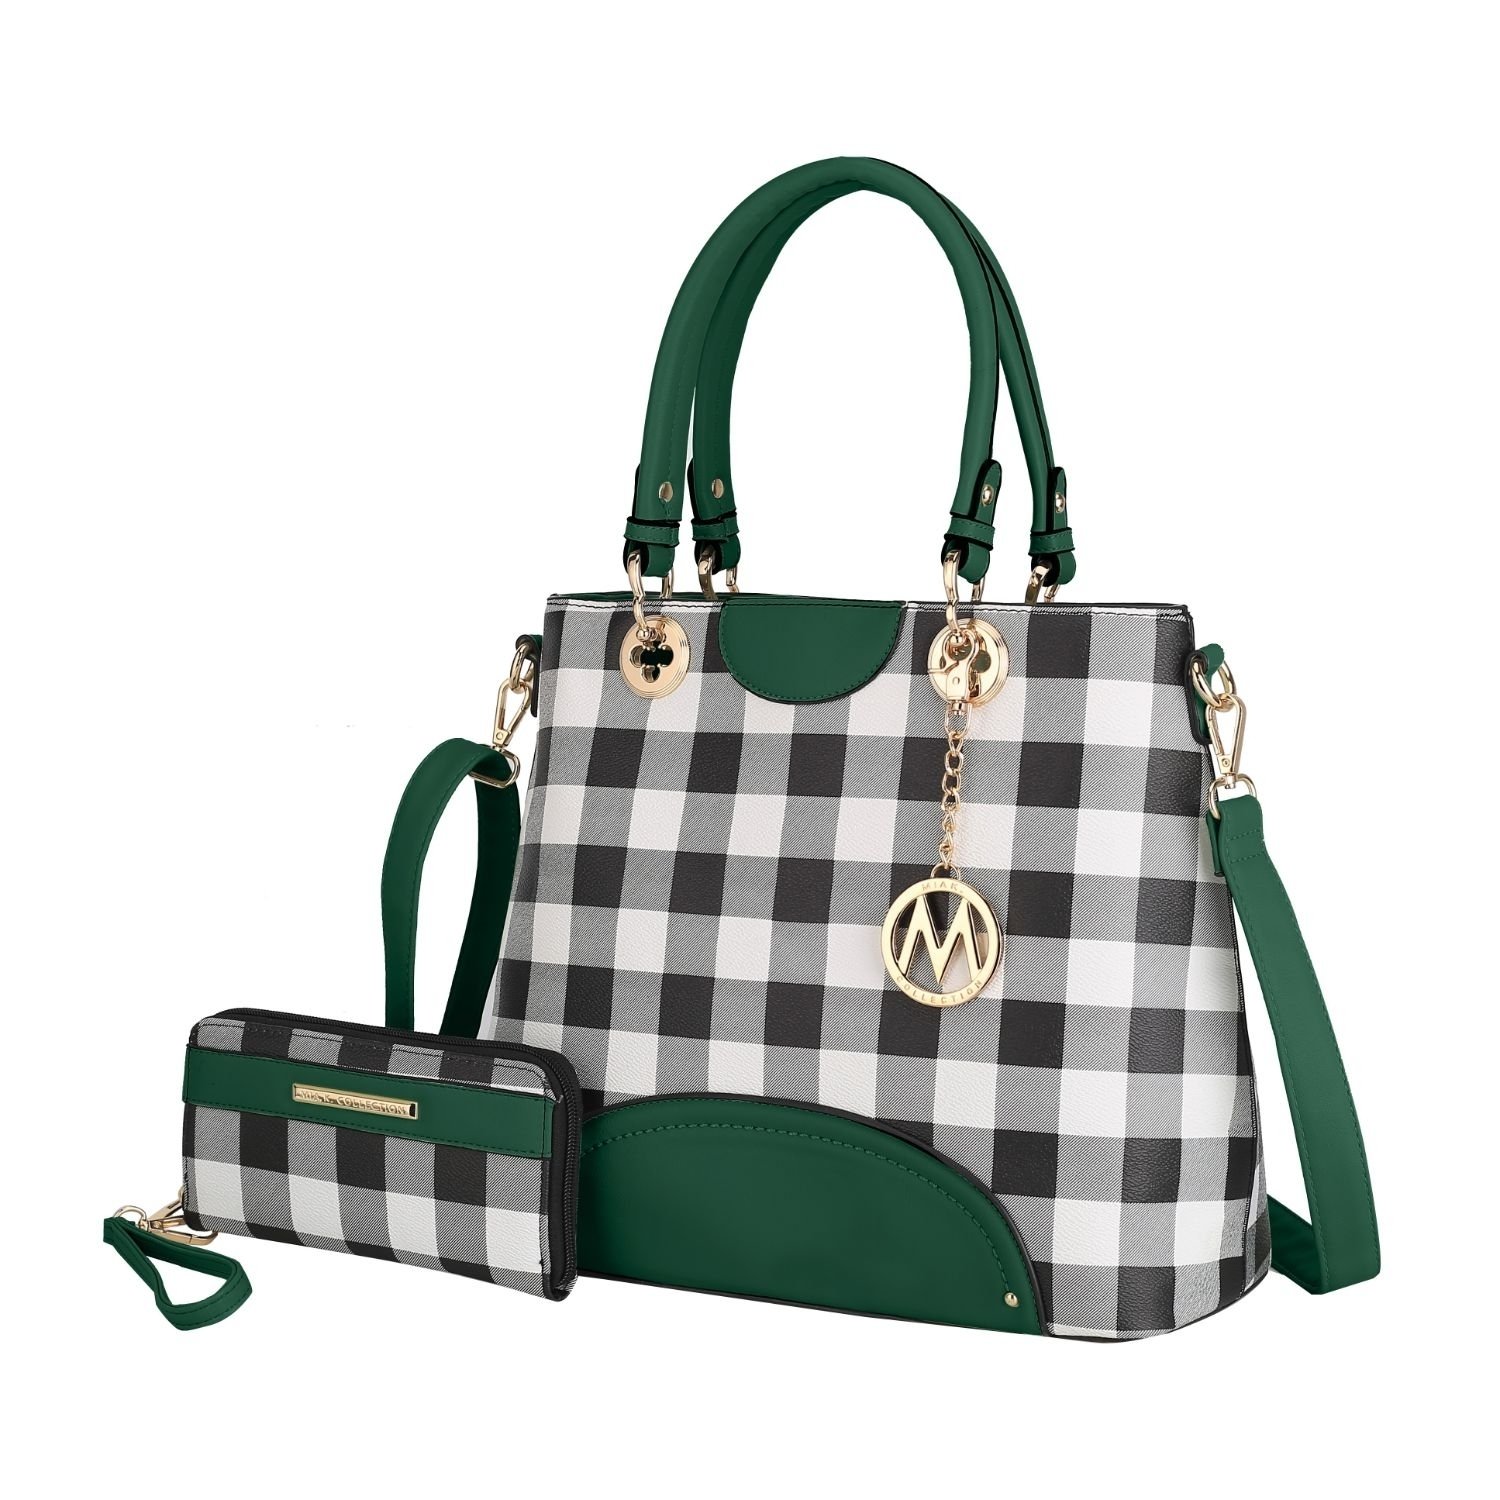 MKF Collection Gabriella Checkers Tote Handbag With Wallet By Mia K. - Cognac Brown